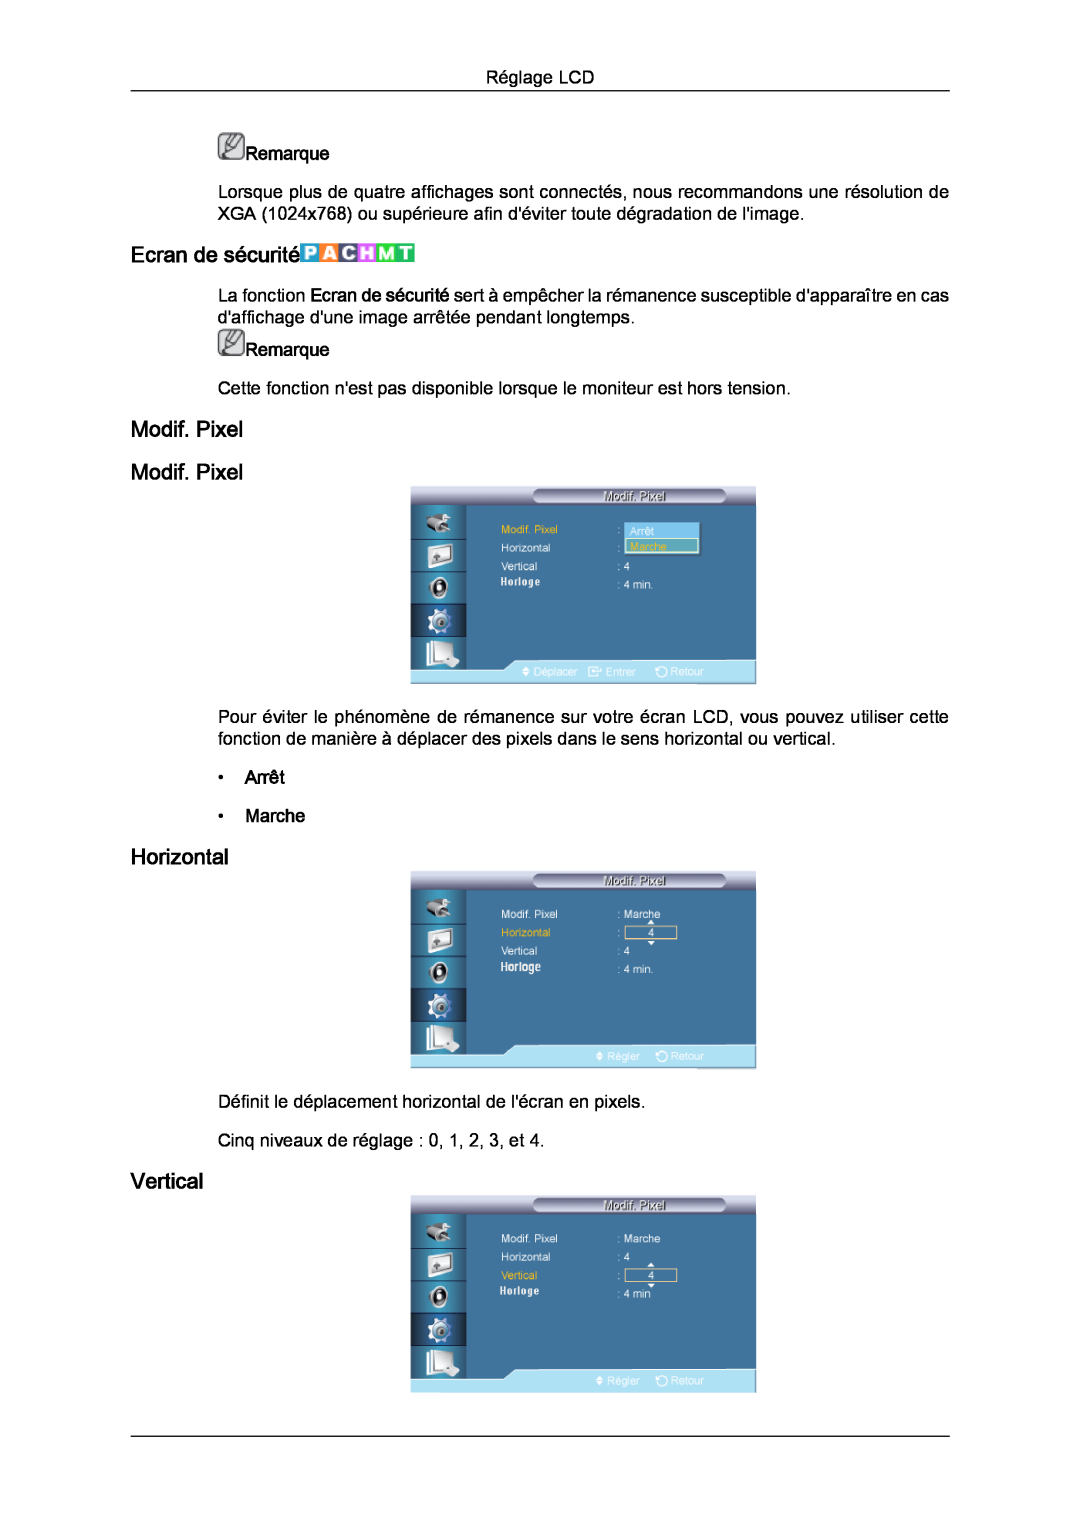 Samsung LH46CRPMBD/EN manual Ecran de sécurité, Modif. Pixel Modif. Pixel, Horizontal, Vertical, Remarque, Arrêt Marche 